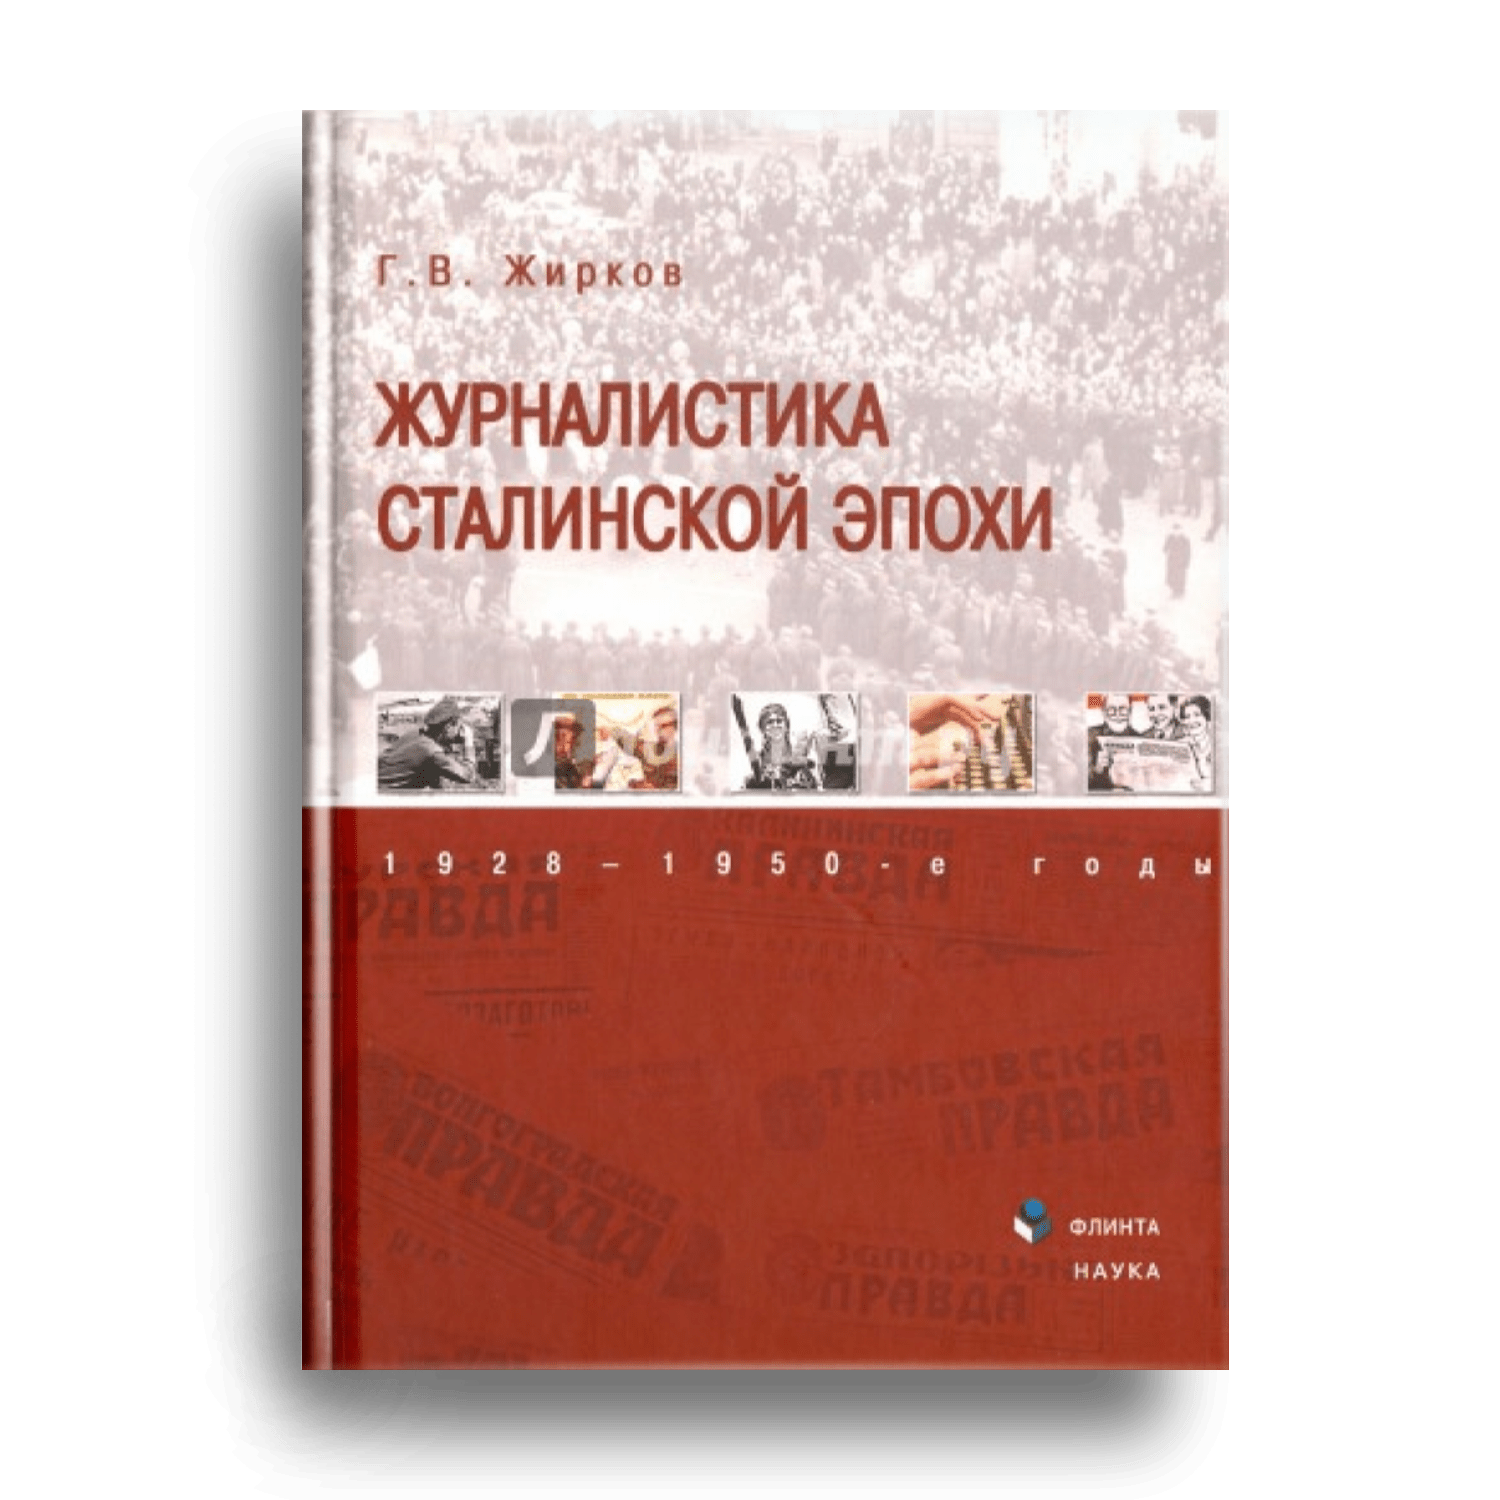 4. Журналистика сталинской эпохи, 1928-1950-е годы.